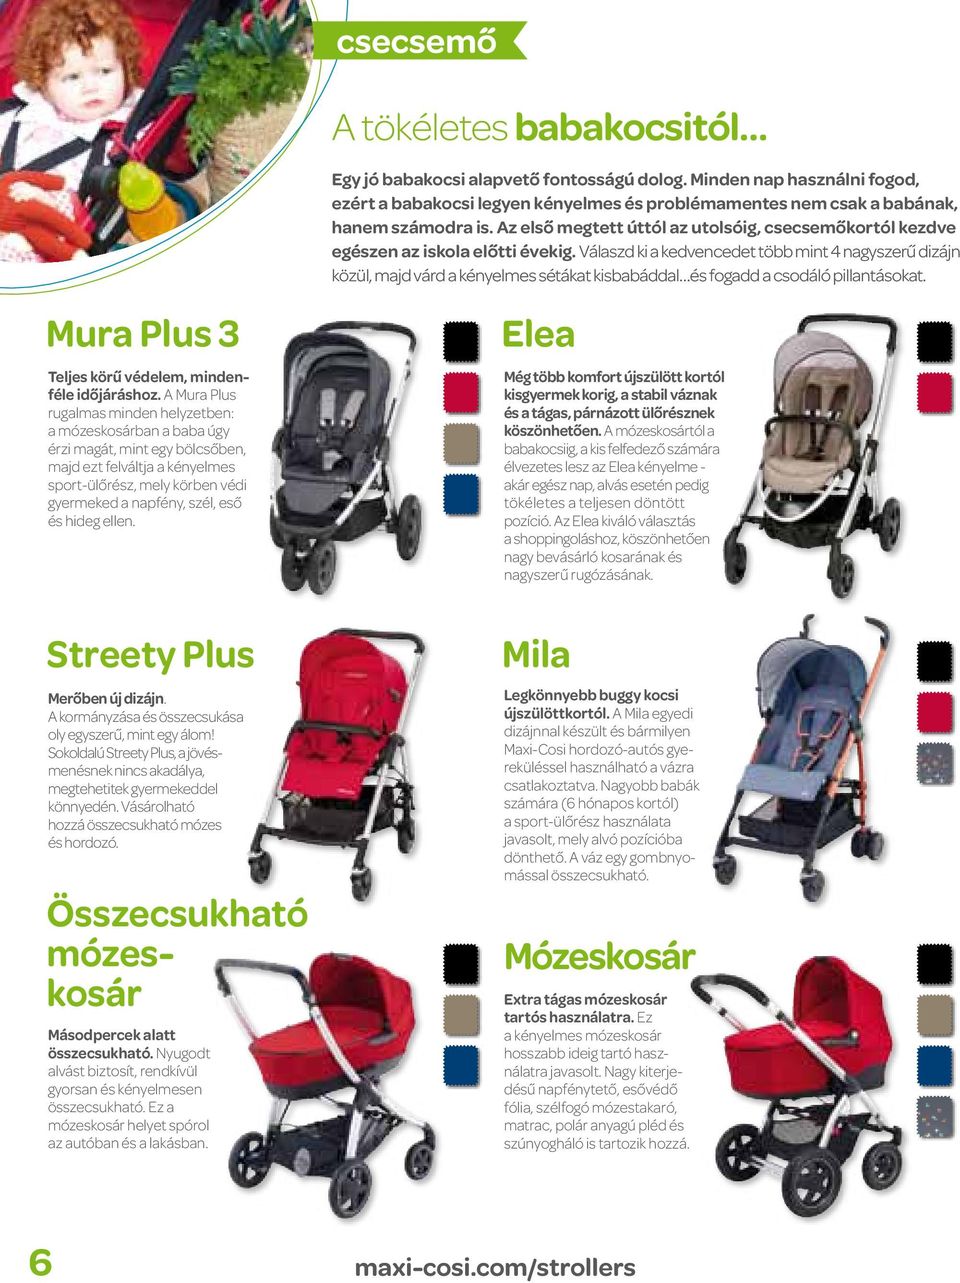 Válaszd ki a kedvencedet több mint 4 nagyszerű dizájn közül, majd várd a kényelmes sétákat kisbabáddal és fogadd a csodáló pillantásokat. Mura Plus 3 Teljes körű védelem, mindenféle időjáráshoz.